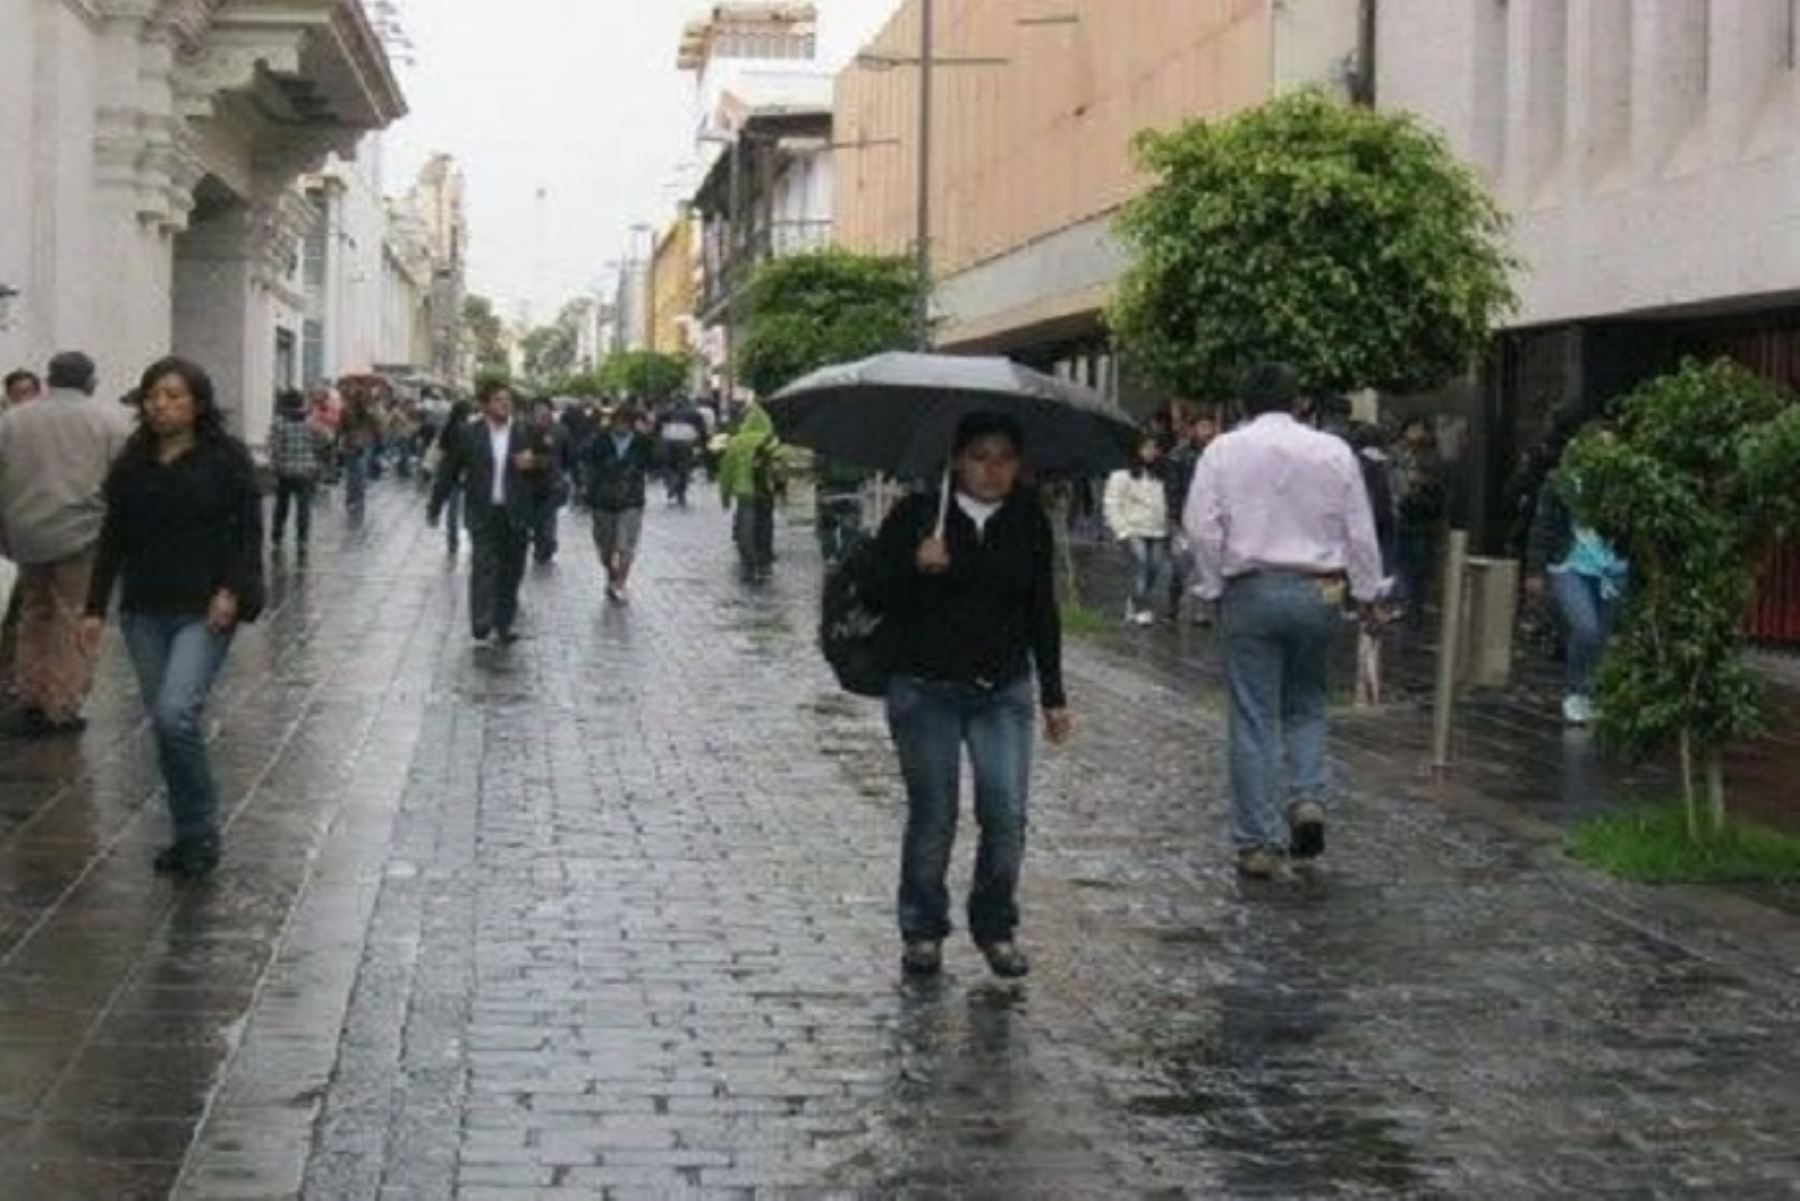 Mañana lunes y el martes 11 podrían intensificarse las precipitaciones pluviales, especialmente en la ciudad, por lo que instó a las autoridades y población tomar las previsiones del caso.